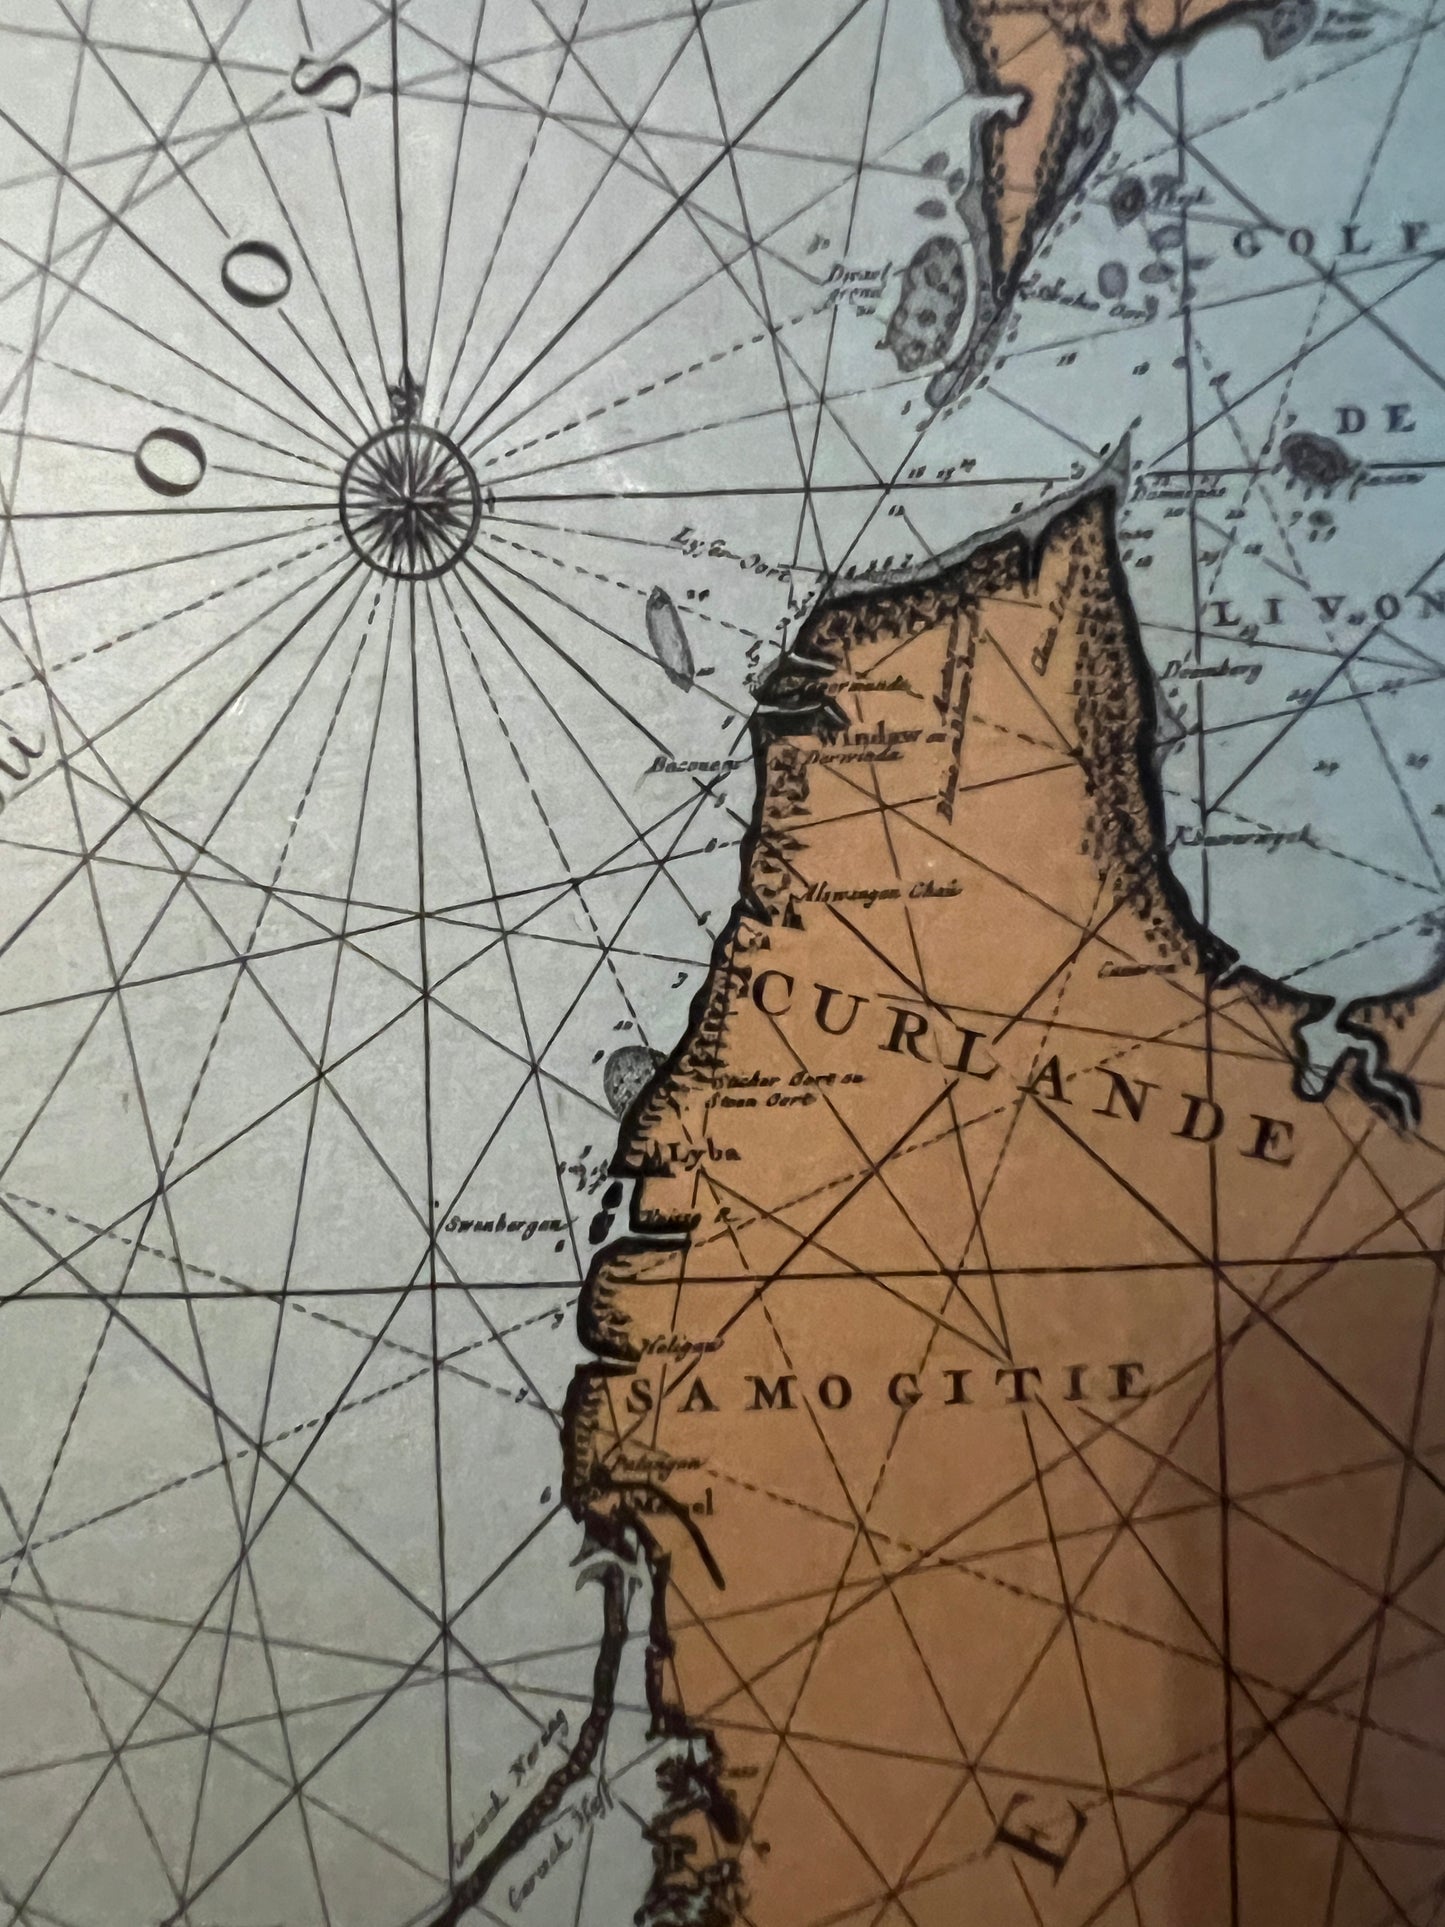 Kartografie Grafik, Carte de La Mer Baltique Finnischer Meerbusen 32x40cm